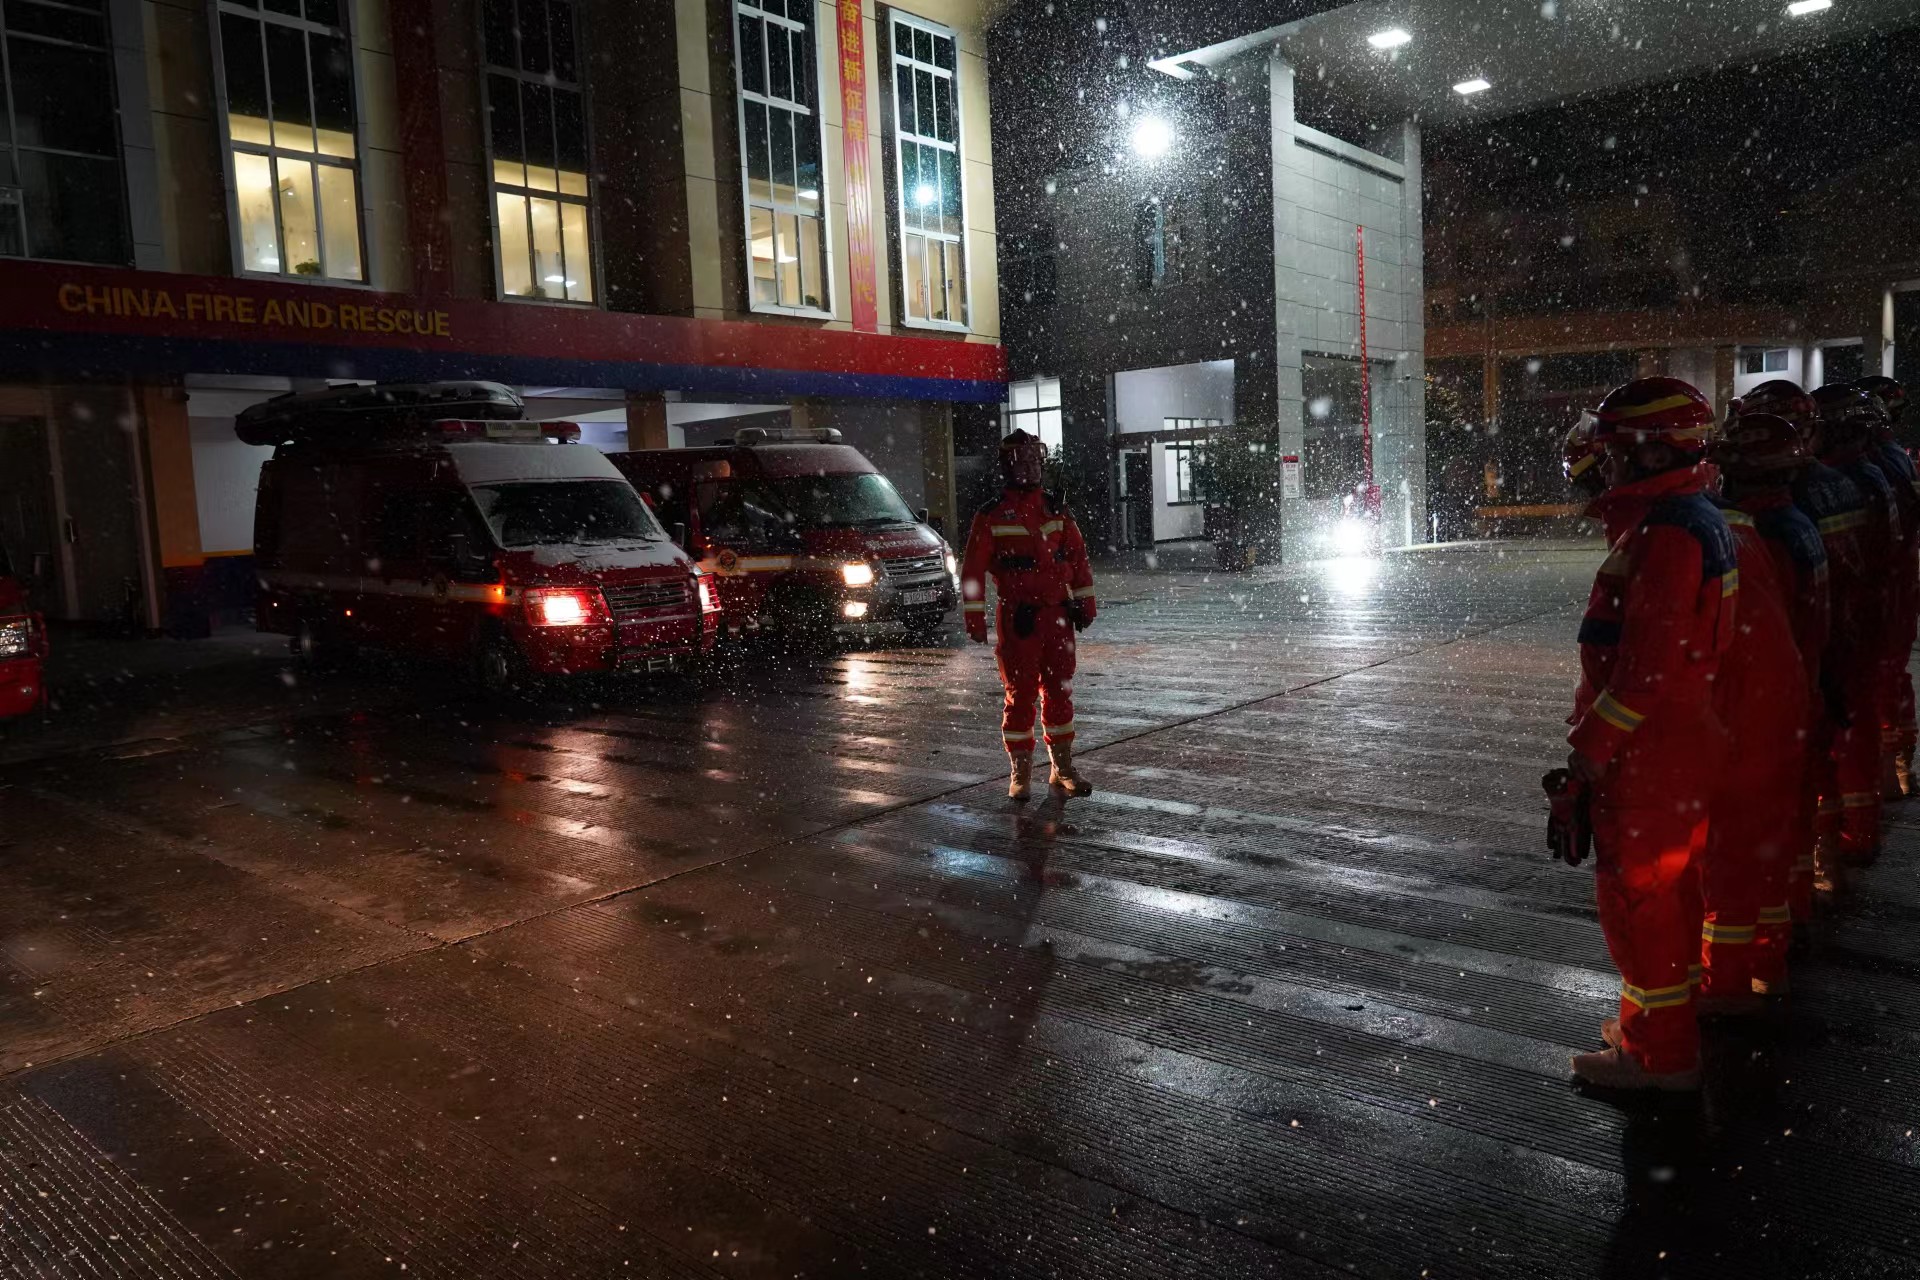 昭通市消防救援支隊緊急出動趕赴現場開展救援。昭通市消防救援支隊供圖